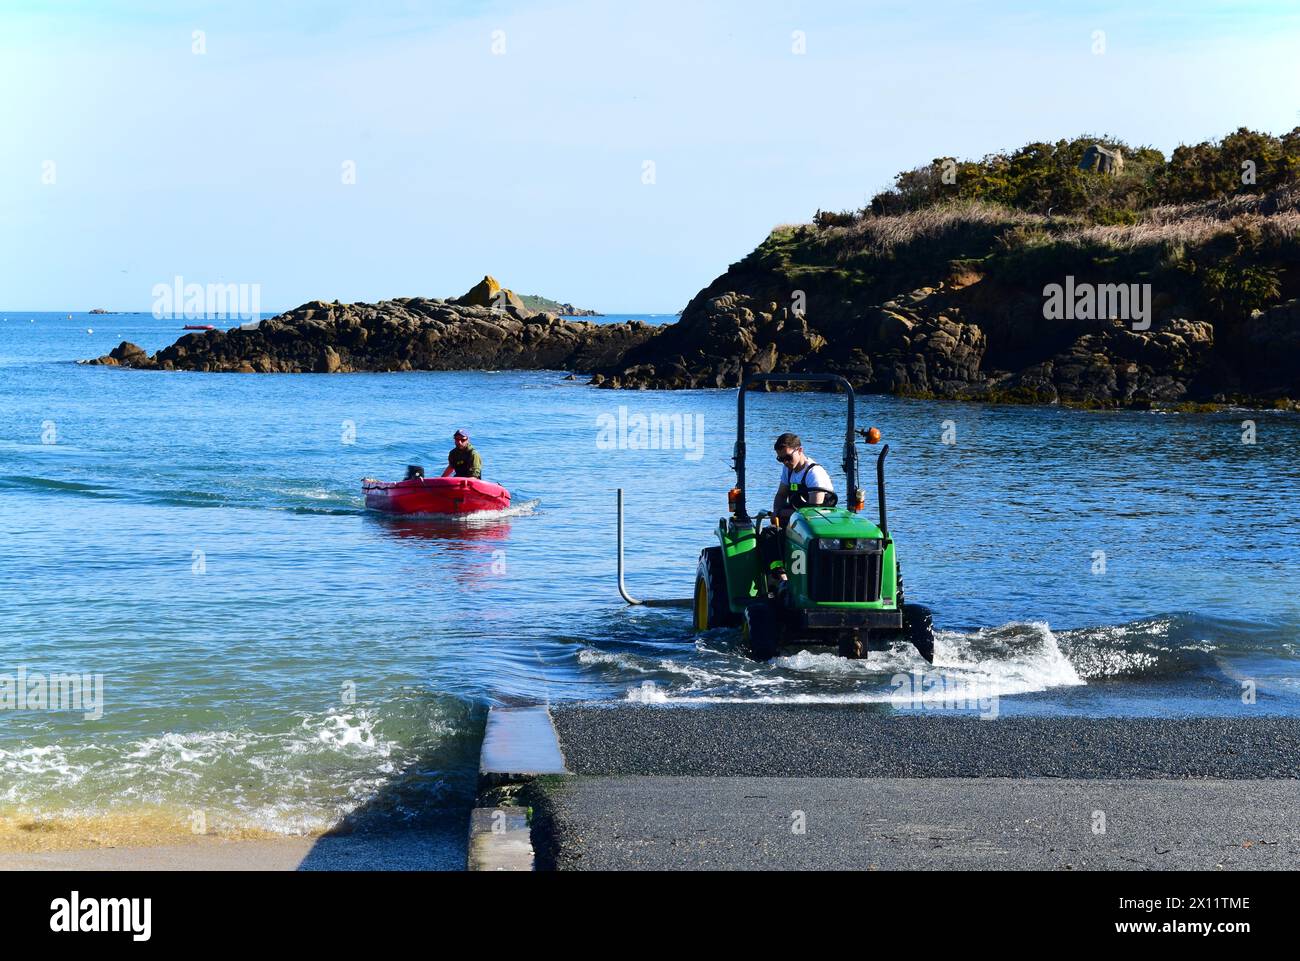 Quai de bateau à moteur dighy avec l'aide de tracteur, Carantec, Bretagne, France Banque D'Images